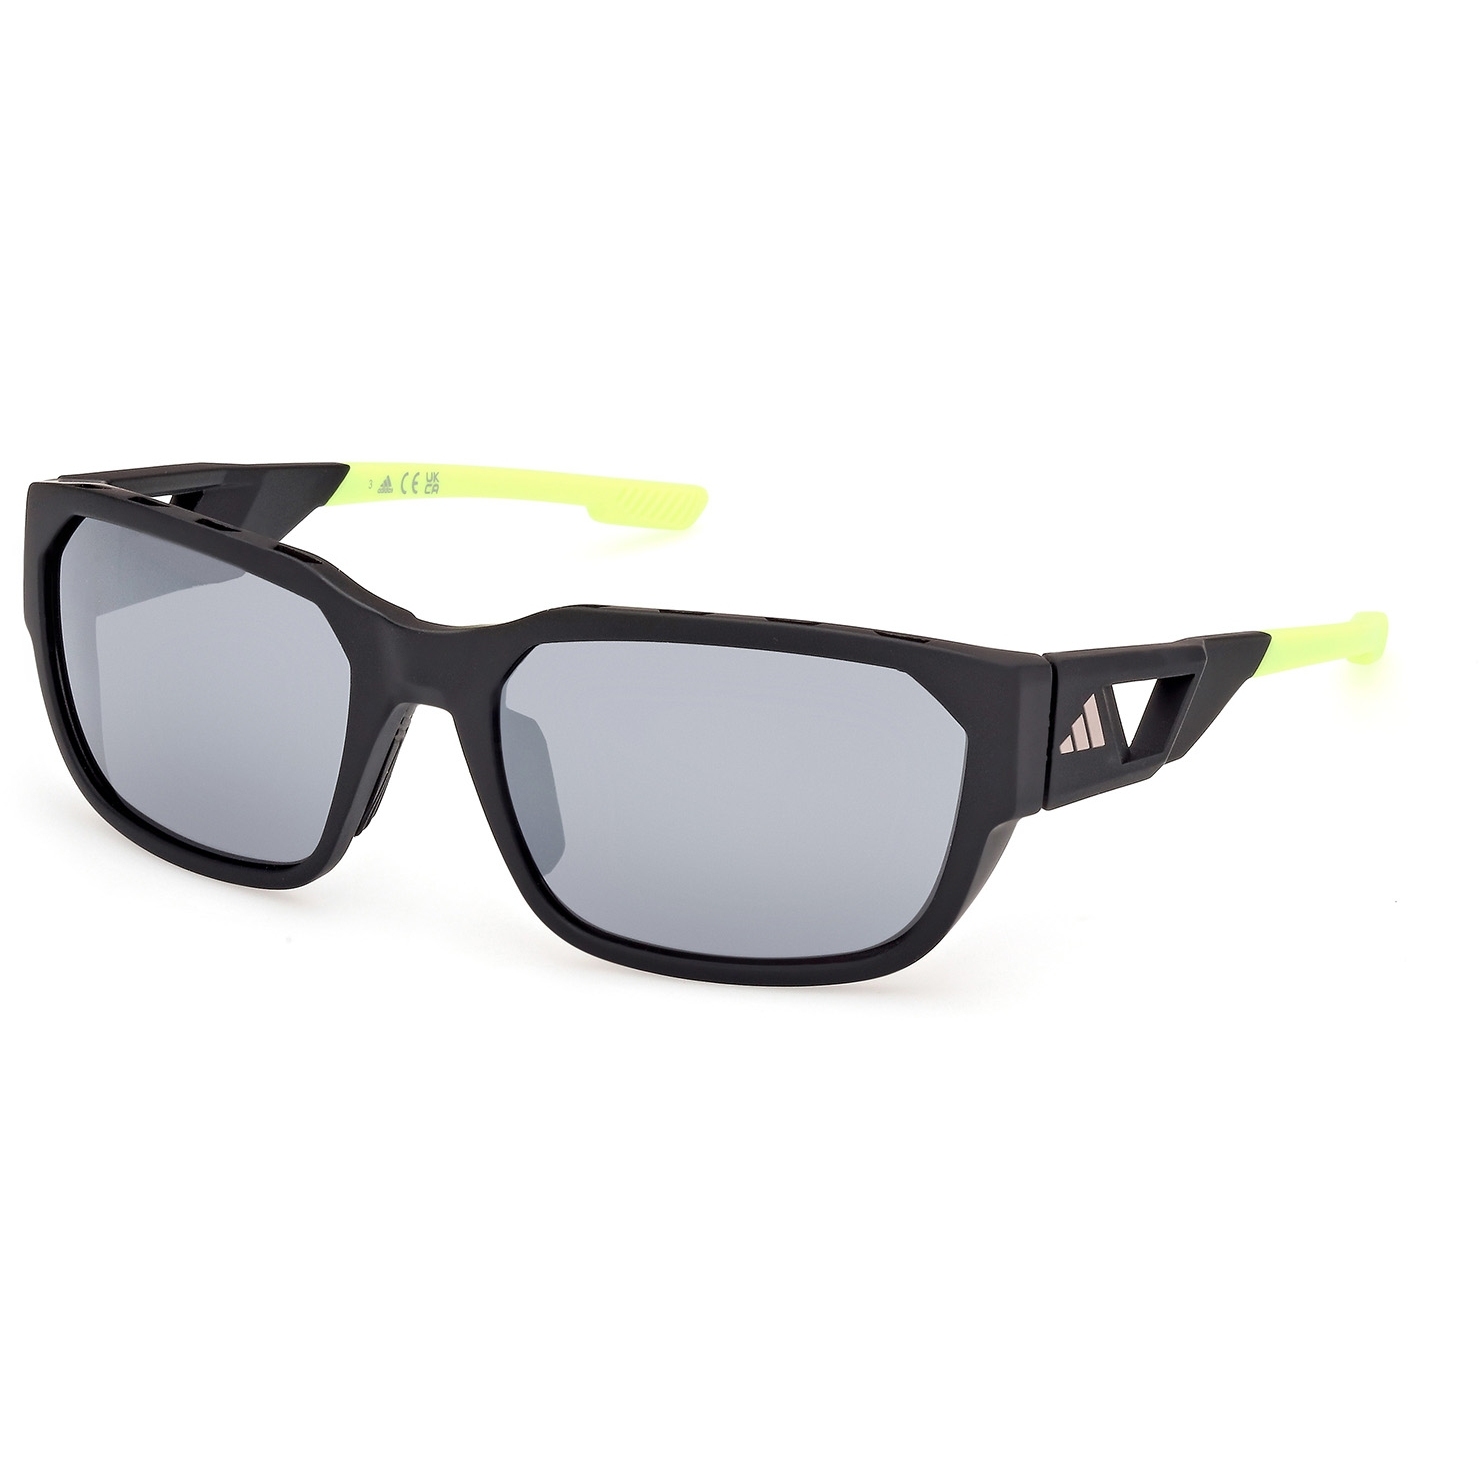 Produktbild von adidas SP0092 Sonnenbrille - Matte Black / Mirror Smoke